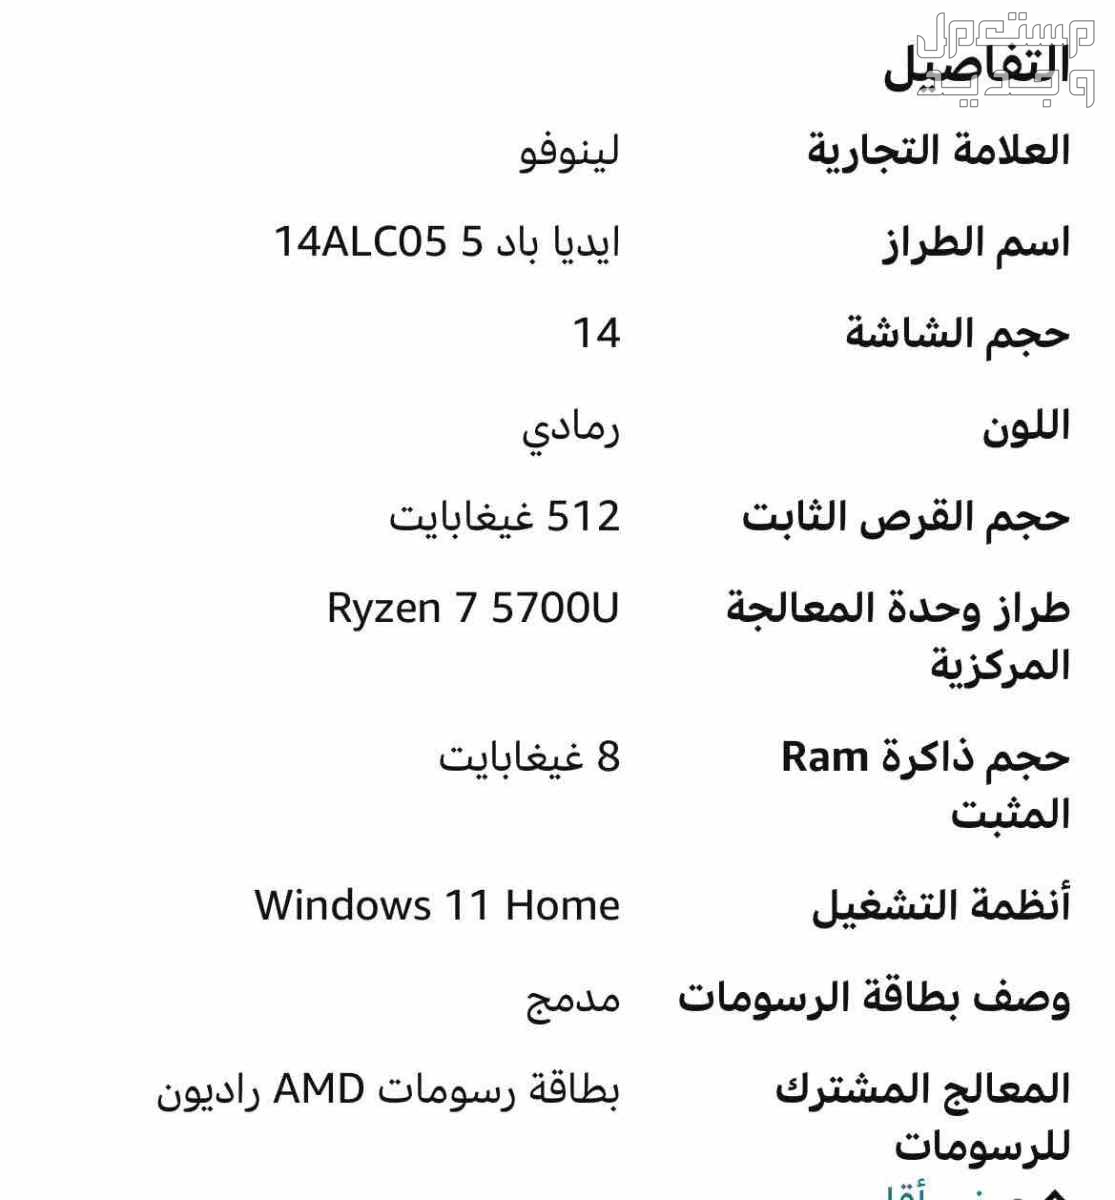 لابتوب لينفو ايديا باد 5  ماركة لينوفو في الرياض بسعر 1100 ريال سعودي